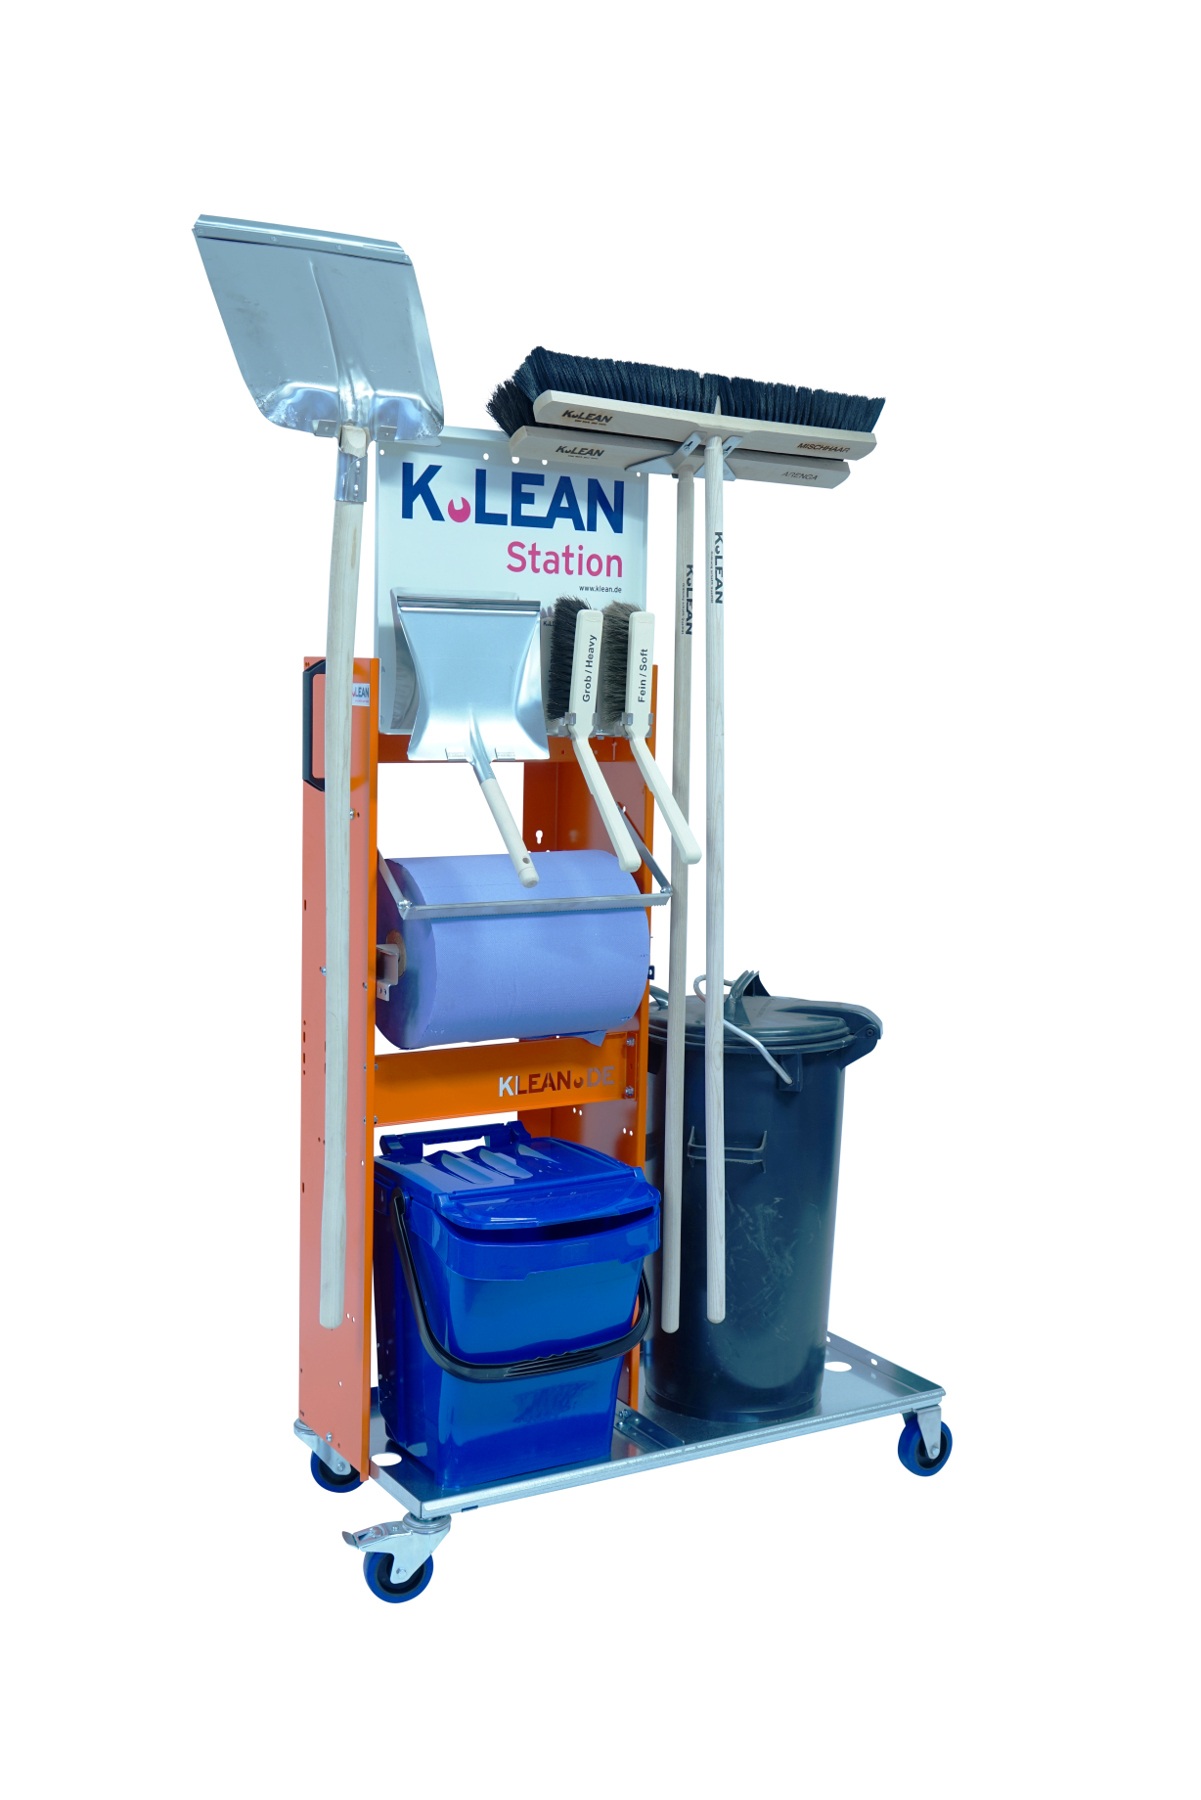 Moderne 5S Reinigungsinsel zur Sauberhaltung des Arbeitsplatzes mit allen Utensilien die Sie benötigen. Kehrschaufel, Mülleimer, Saalbesen Fein und Grob, , Handfeger Fein und Grob sowie Kehrschaufel und Putzpapier